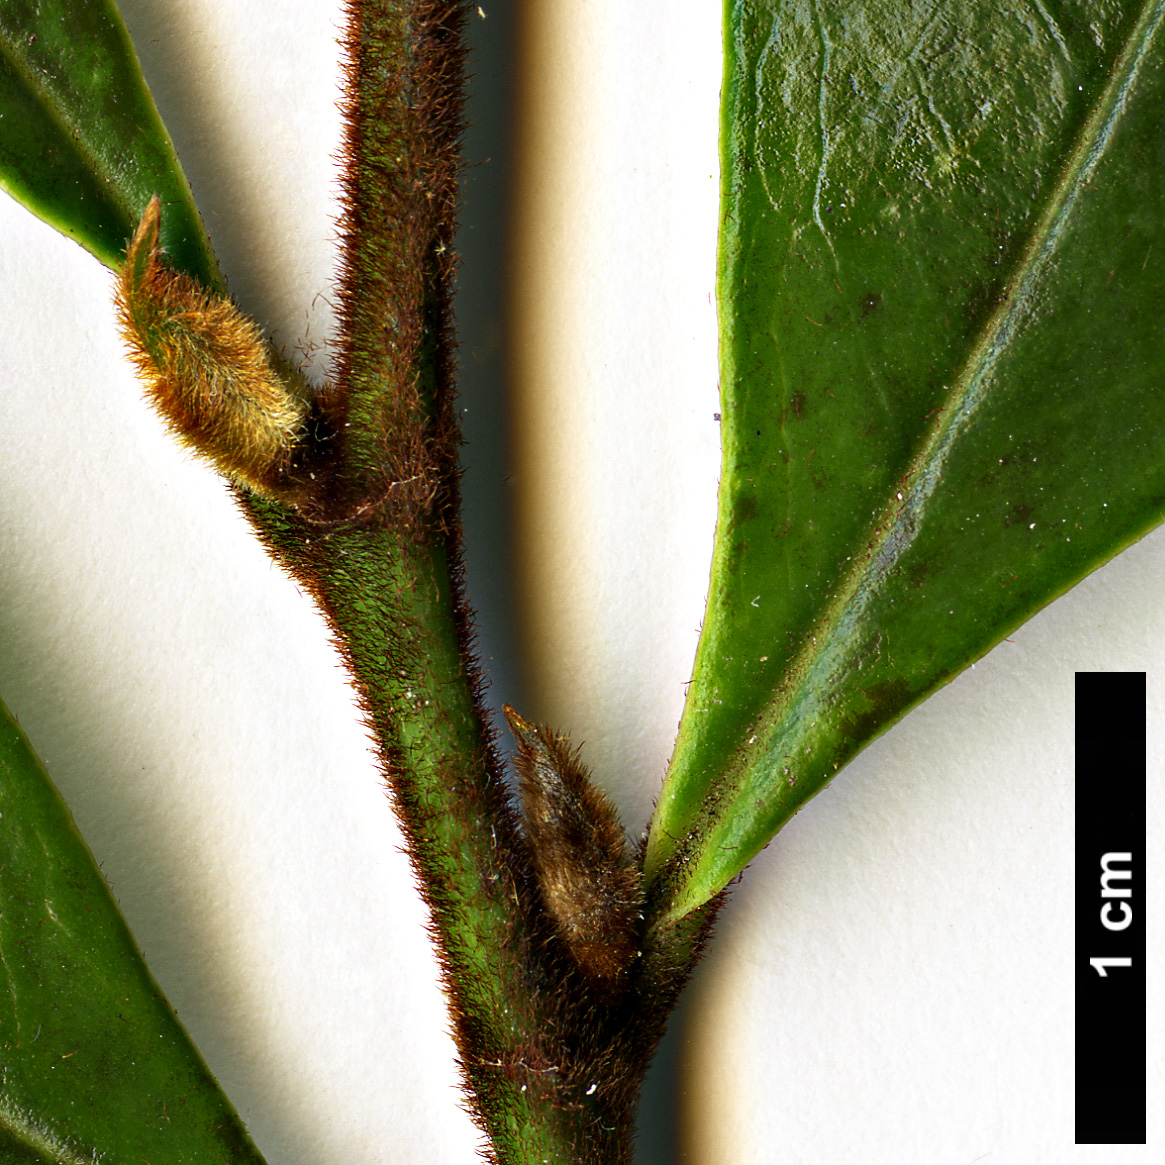 High resolution image: Family: Magnoliaceae - Genus: Magnolia - Taxon: figo